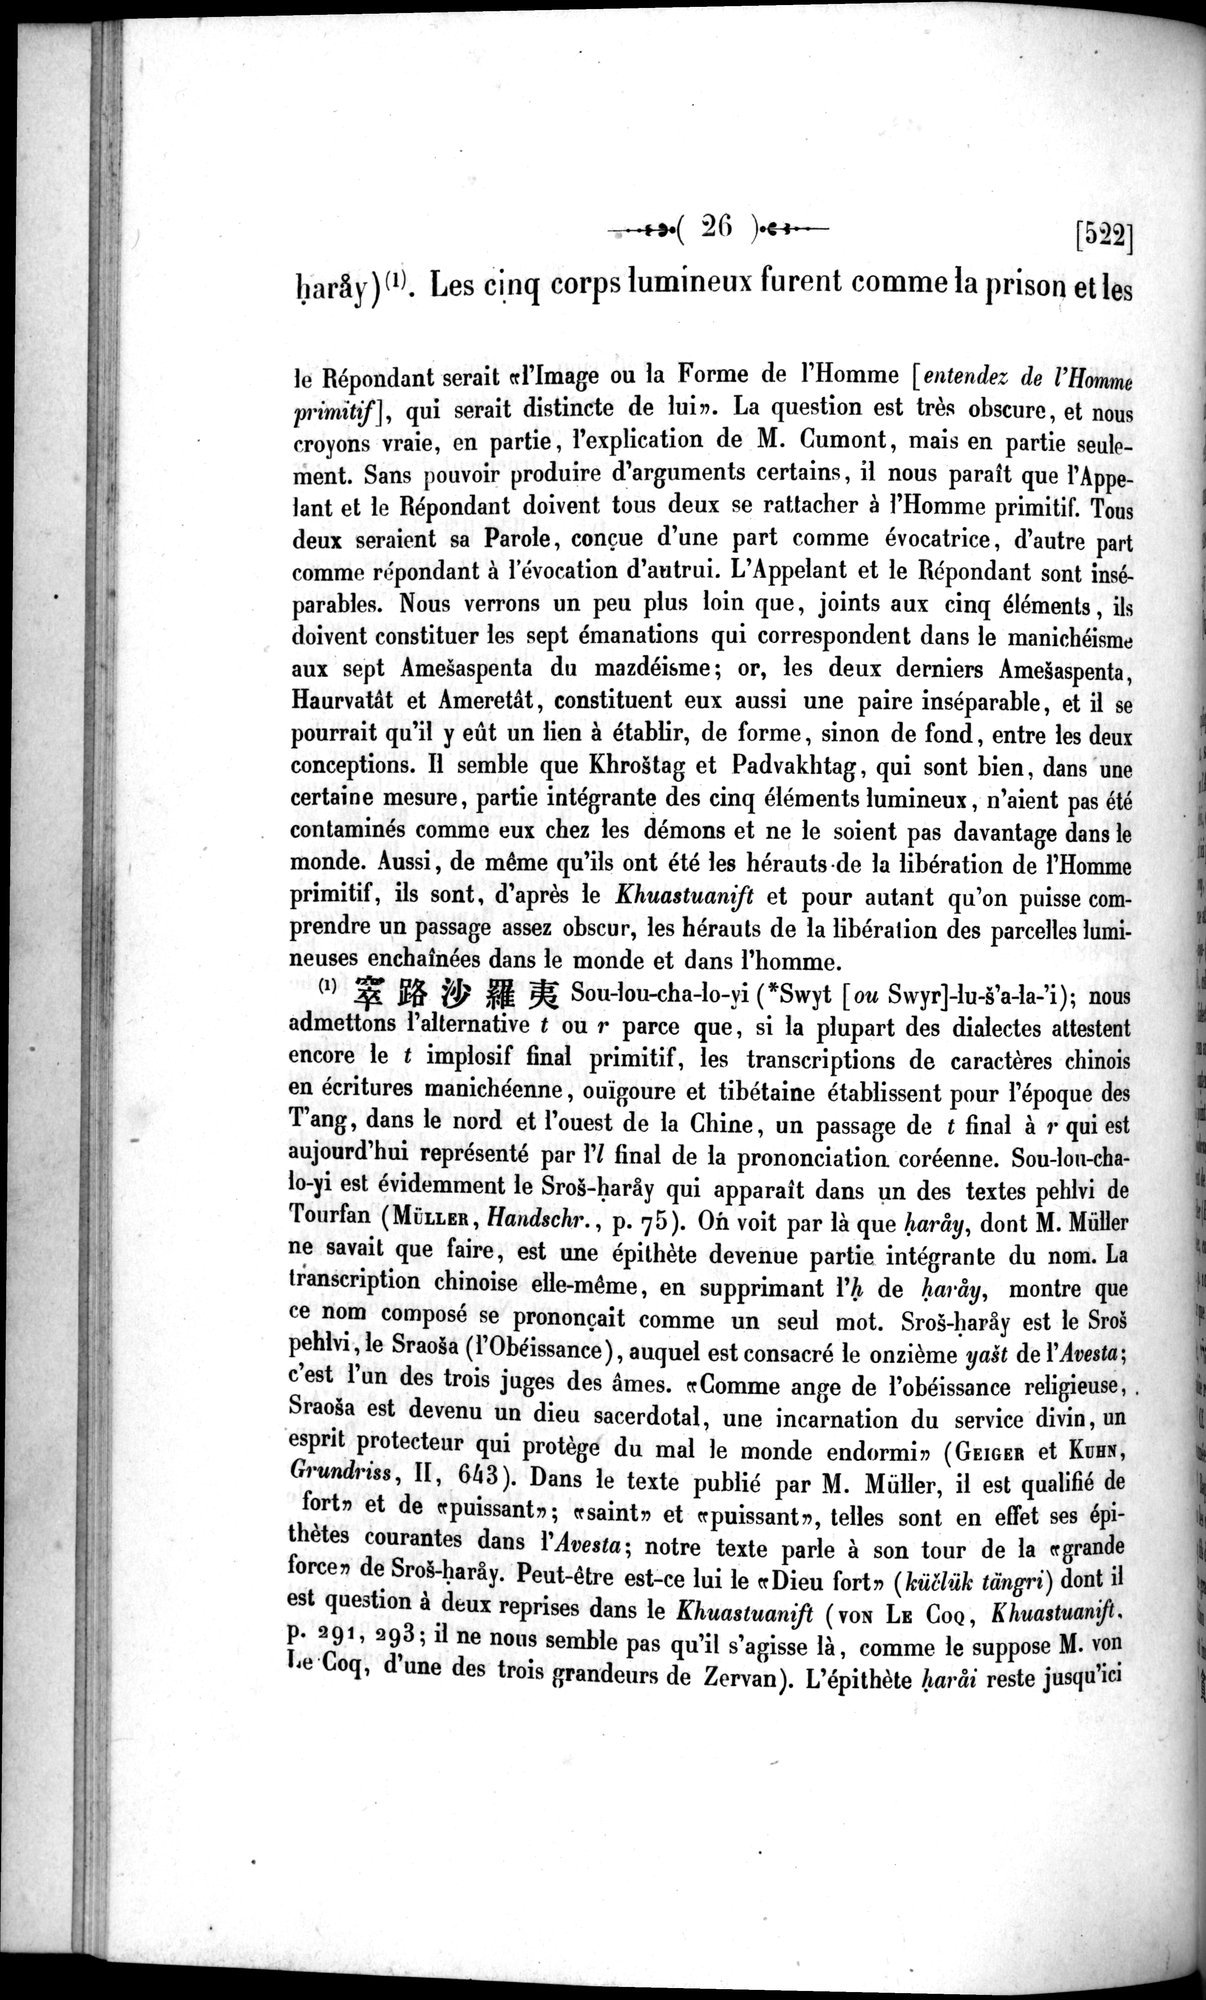 Un traité manichéen retrouvé en Chine : vol.1 / Page 36 (Grayscale High Resolution Image)